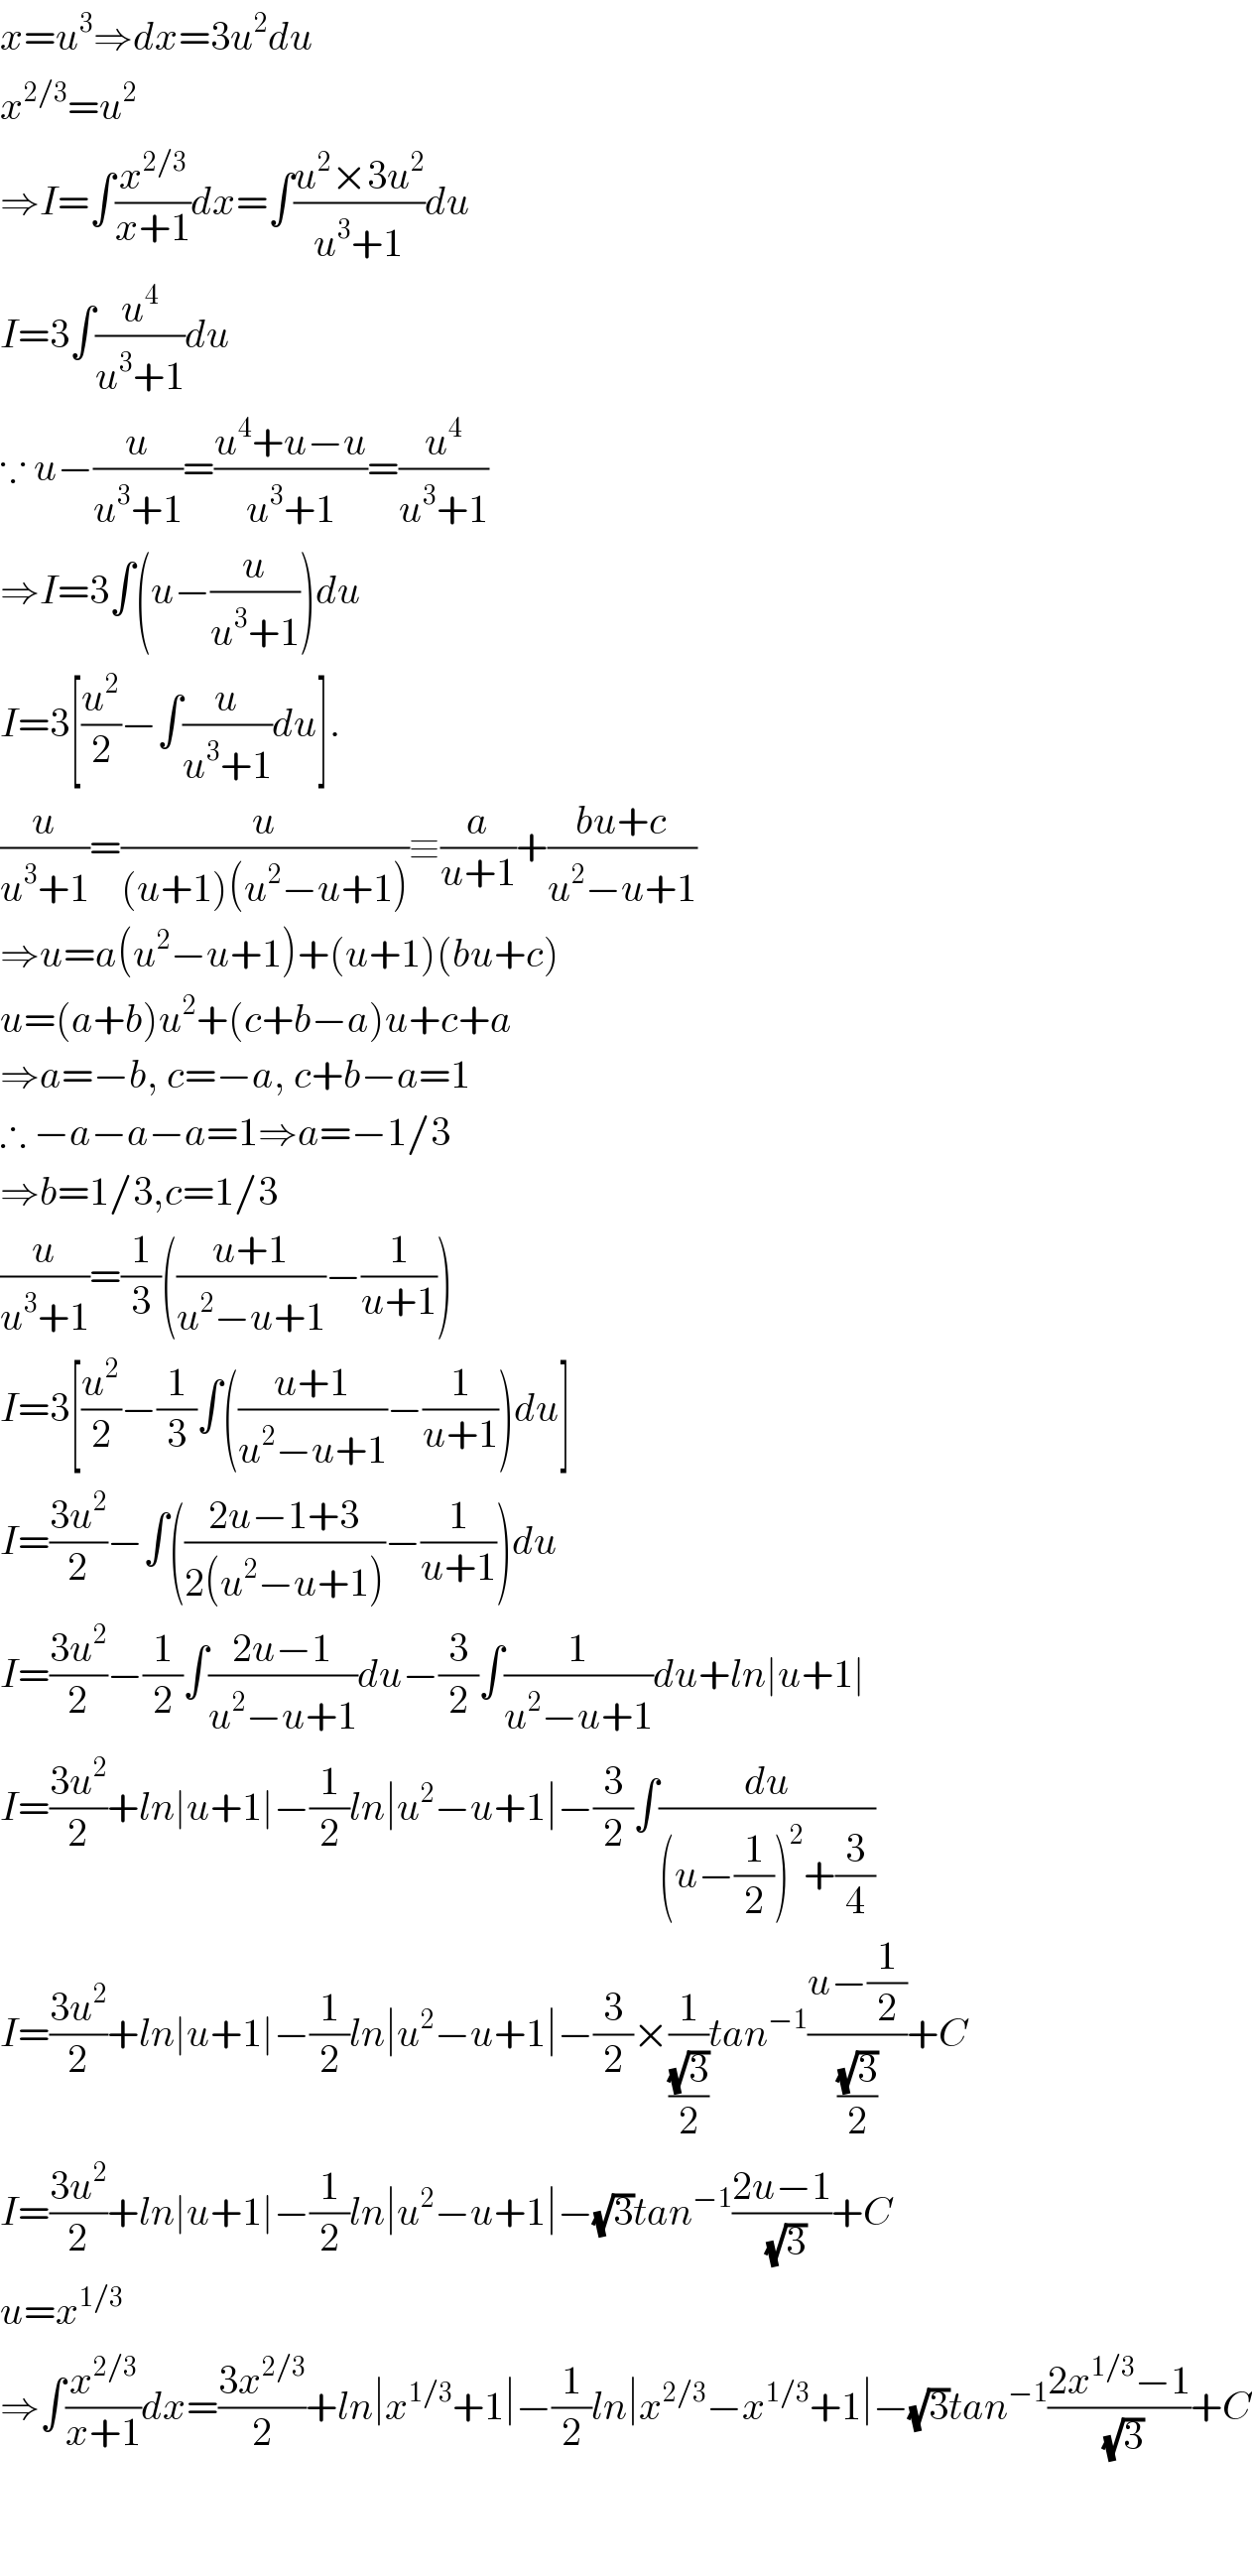 x=u^3 ⇒dx=3u^2 du  x^(2/3) =u^2   ⇒I=∫(x^(2/3) /(x+1))dx=∫((u^2 ×3u^2 )/(u^3 +1))du  I=3∫(u^4 /(u^3 +1))du  ∵ u−(u/(u^3 +1))=((u^4 +u−u)/(u^3 +1))=(u^4 /(u^3 +1))  ⇒I=3∫(u−(u/(u^3 +1)))du  I=3[(u^2 /2)−∫(u/(u^3 +1))du].  (u/(u^3 +1))=(u/((u+1)(u^2 −u+1)))≡(a/(u+1))+((bu+c)/(u^2 −u+1))  ⇒u=a(u^2 −u+1)+(u+1)(bu+c)  u=(a+b)u^2 +(c+b−a)u+c+a  ⇒a=−b, c=−a, c+b−a=1  ∴ −a−a−a=1⇒a=−1/3  ⇒b=1/3,c=1/3  (u/(u^3 +1))=(1/3)(((u+1)/(u^2 −u+1))−(1/(u+1)))  I=3[(u^2 /2)−(1/3)∫(((u+1)/(u^2 −u+1))−(1/(u+1)))du]  I=((3u^2 )/2)−∫(((2u−1+3)/(2(u^2 −u+1)))−(1/(u+1)))du  I=((3u^2 )/2)−(1/2)∫((2u−1)/(u^2 −u+1))du−(3/2)∫(1/(u^2 −u+1))du+ln∣u+1∣  I=((3u^2 )/2)+ln∣u+1∣−(1/2)ln∣u^2 −u+1∣−(3/2)∫(du/((u−(1/2))^2 +(3/4)))  I=((3u^2 )/2)+ln∣u+1∣−(1/2)ln∣u^2 −u+1∣−(3/2)×(1/((√3)/2))tan^(−1) ((u−(1/2))/((√3)/2))+C  I=((3u^2 )/2)+ln∣u+1∣−(1/2)ln∣u^2 −u+1∣−(√3)tan^(−1) ((2u−1)/(√3))+C  u=x^(1/3)   ⇒∫(x^(2/3) /(x+1))dx=((3x^(2/3) )/2)+ln∣x^(1/3) +1∣−(1/2)ln∣x^(2/3) −x^(1/3) +1∣−(√3)tan^(−1) ((2x^(1/3) −1)/(√3))+C      